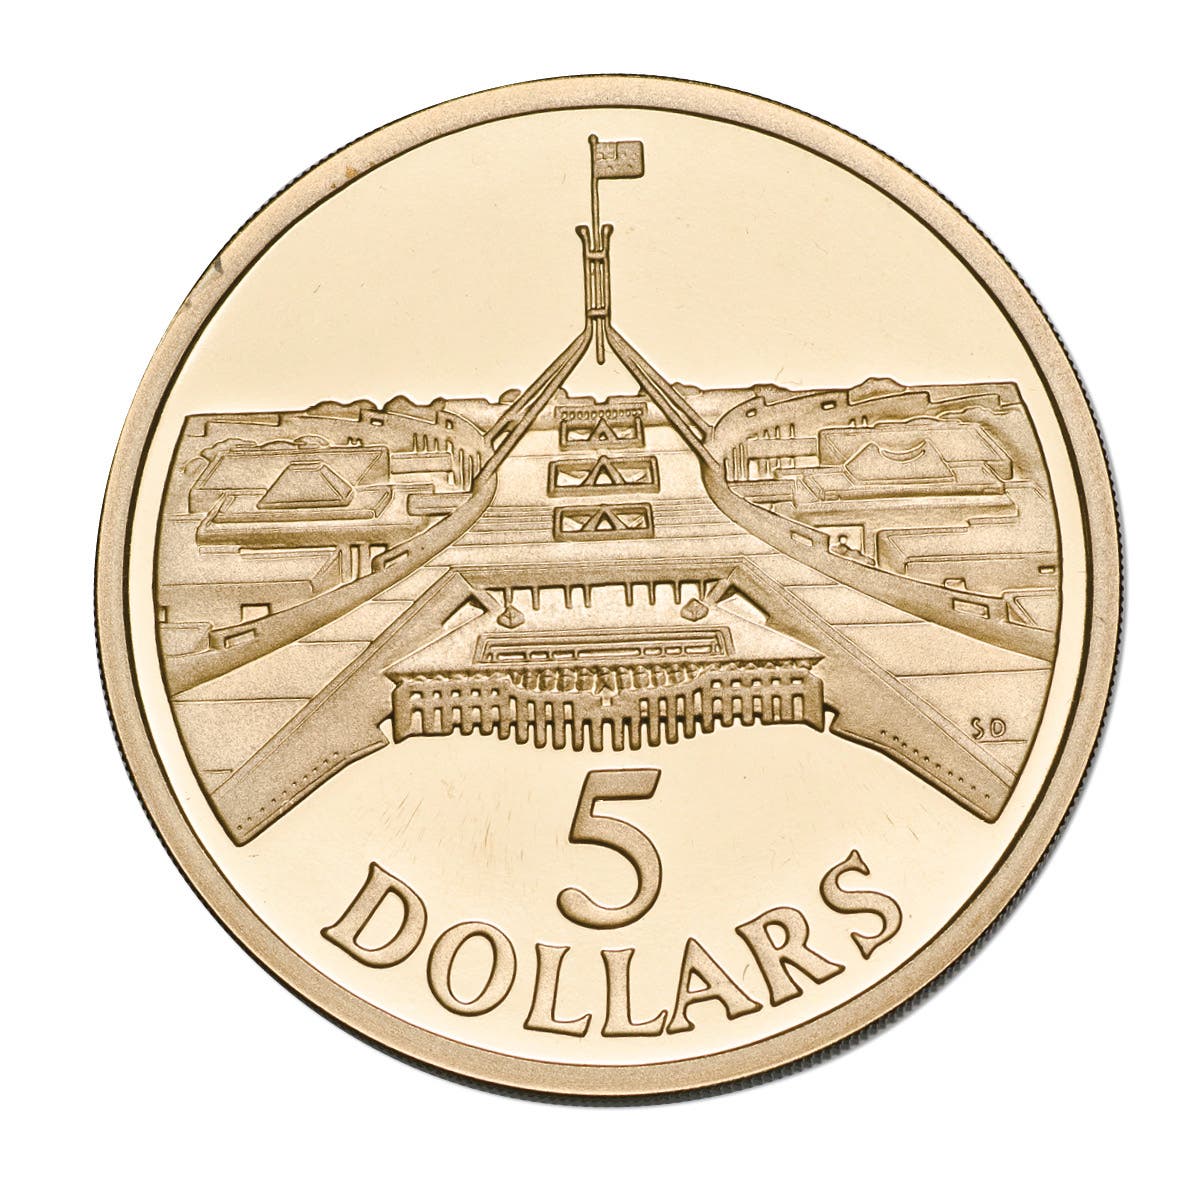 Australia Parliament House 1988 $5 Aluminium-Bronze Proof Coin